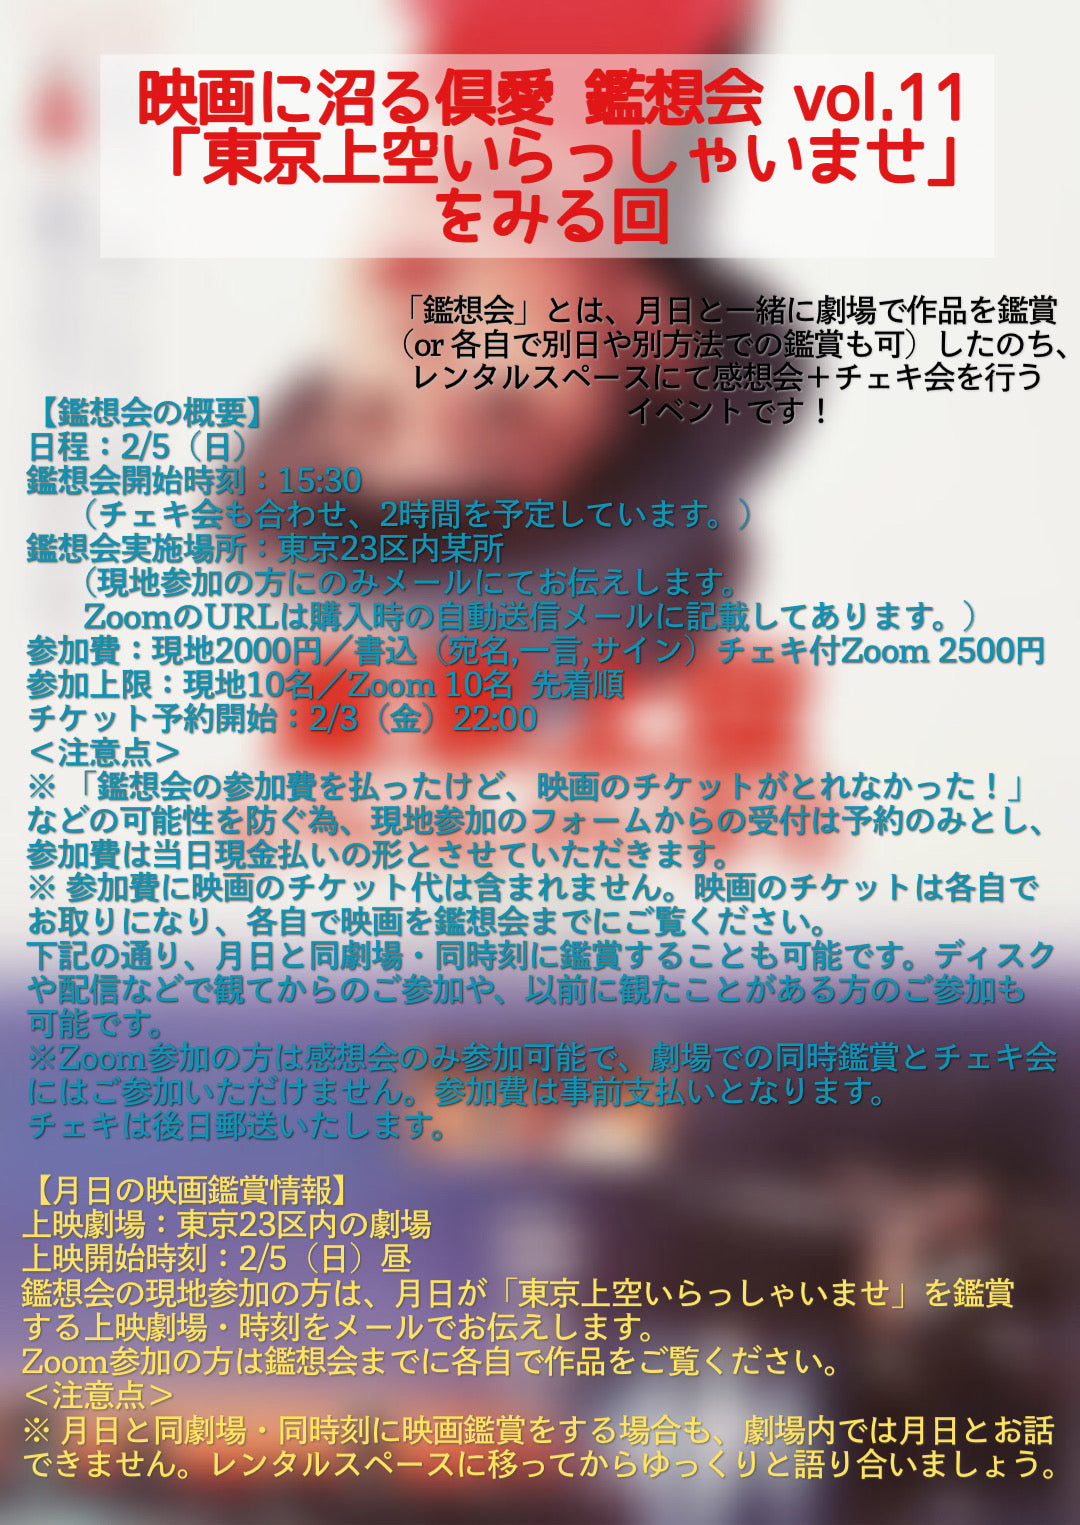 2/5（日）『映画に沼る倶愛 鑑想会 vol.11 「東京上空いらっしゃいませ」をみる回』